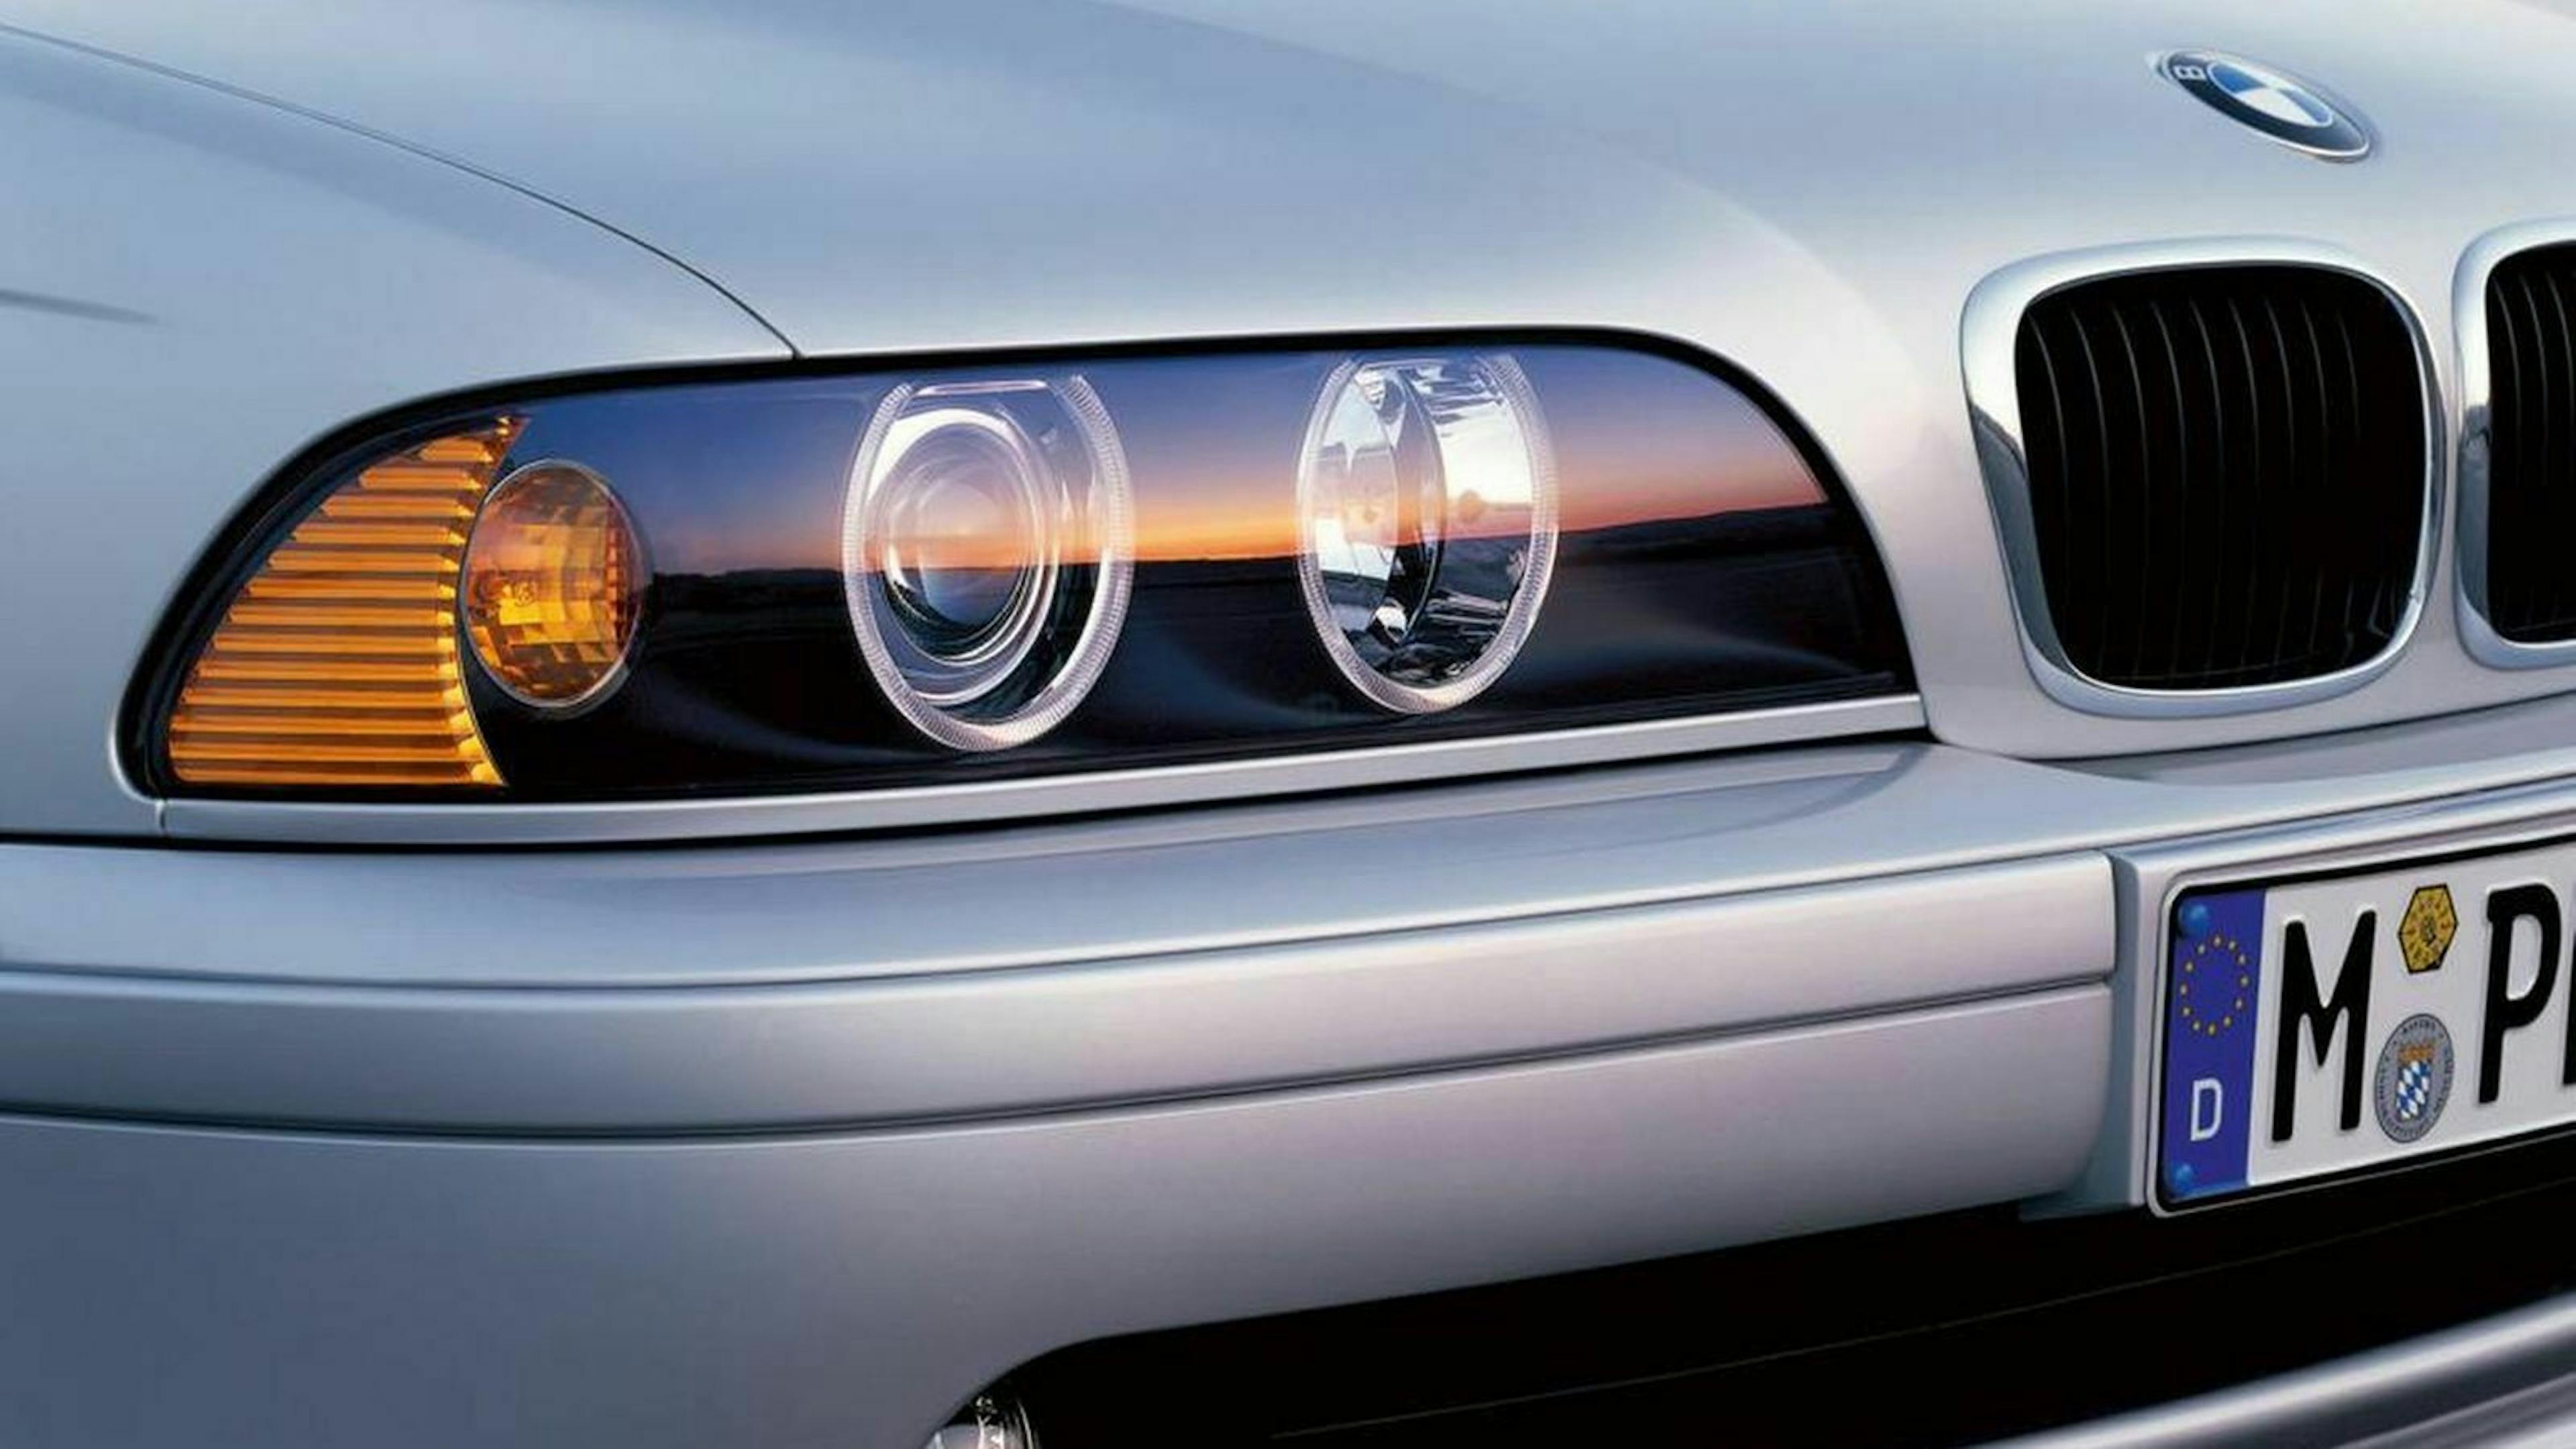 Zu sehen sind die Scheinwerfer des BMW 5er E39 